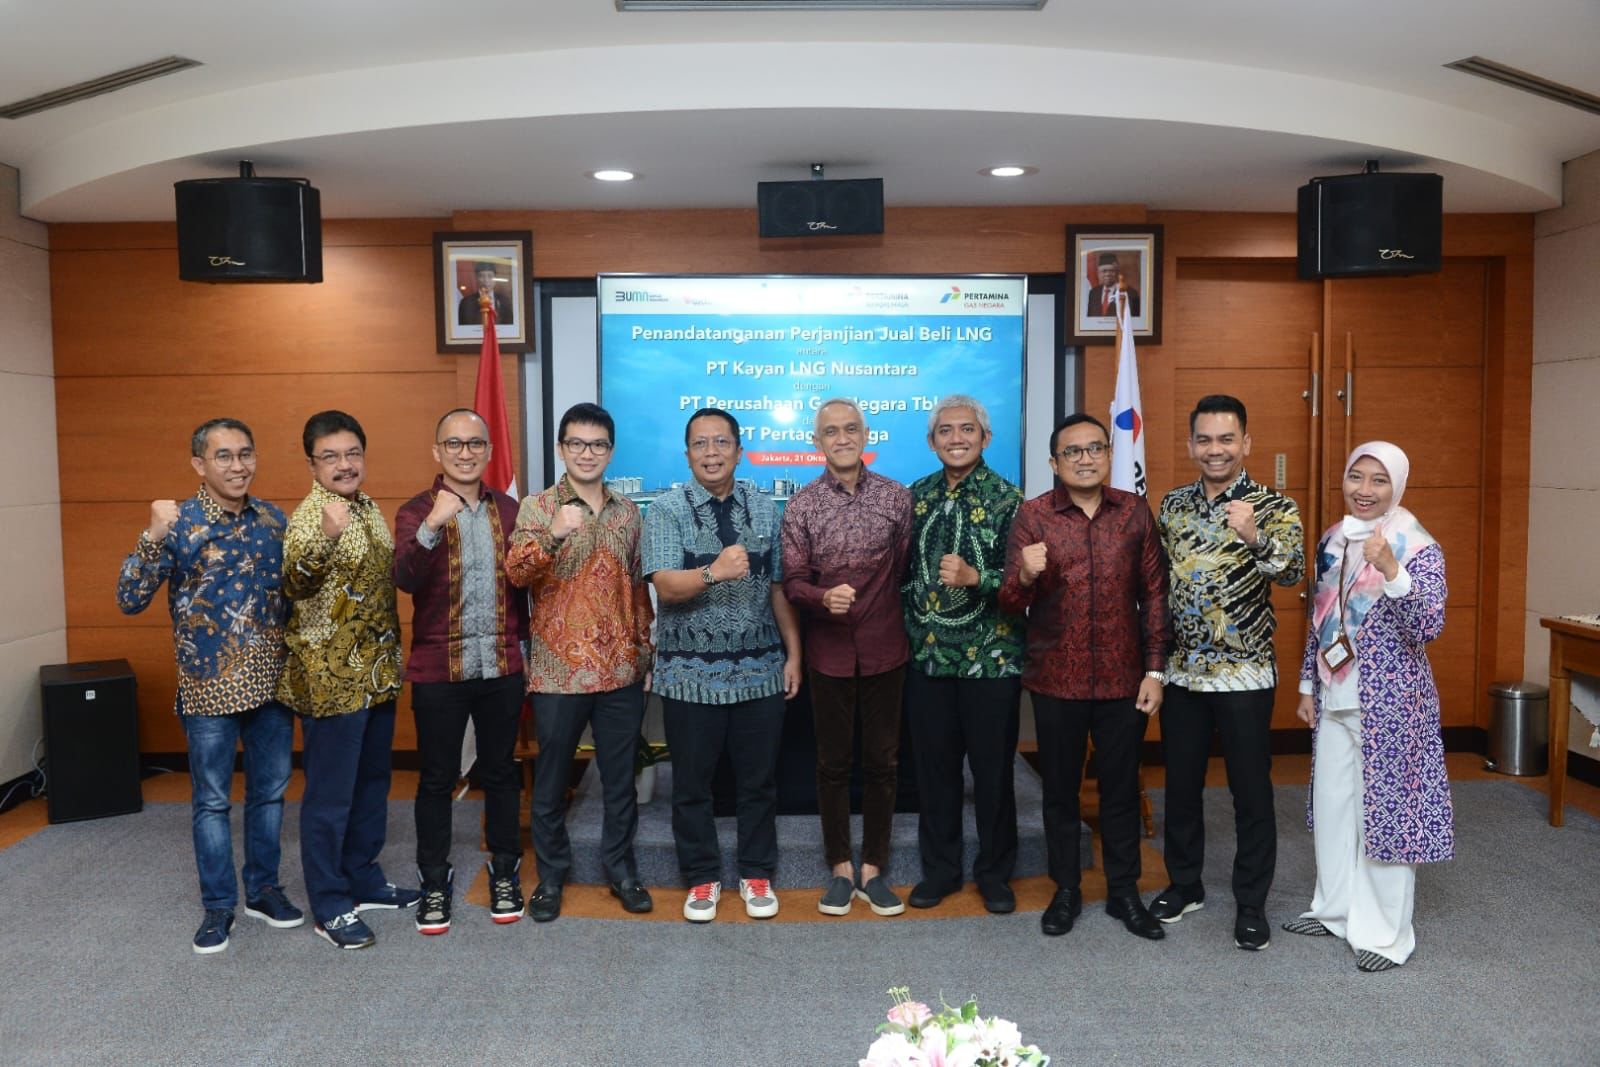 PGN Group Beli LNG PT Kayan LNG Nusantara, Kembangkan Pasar LNG Retail di Kawasan Kalimantan dan Indonesia